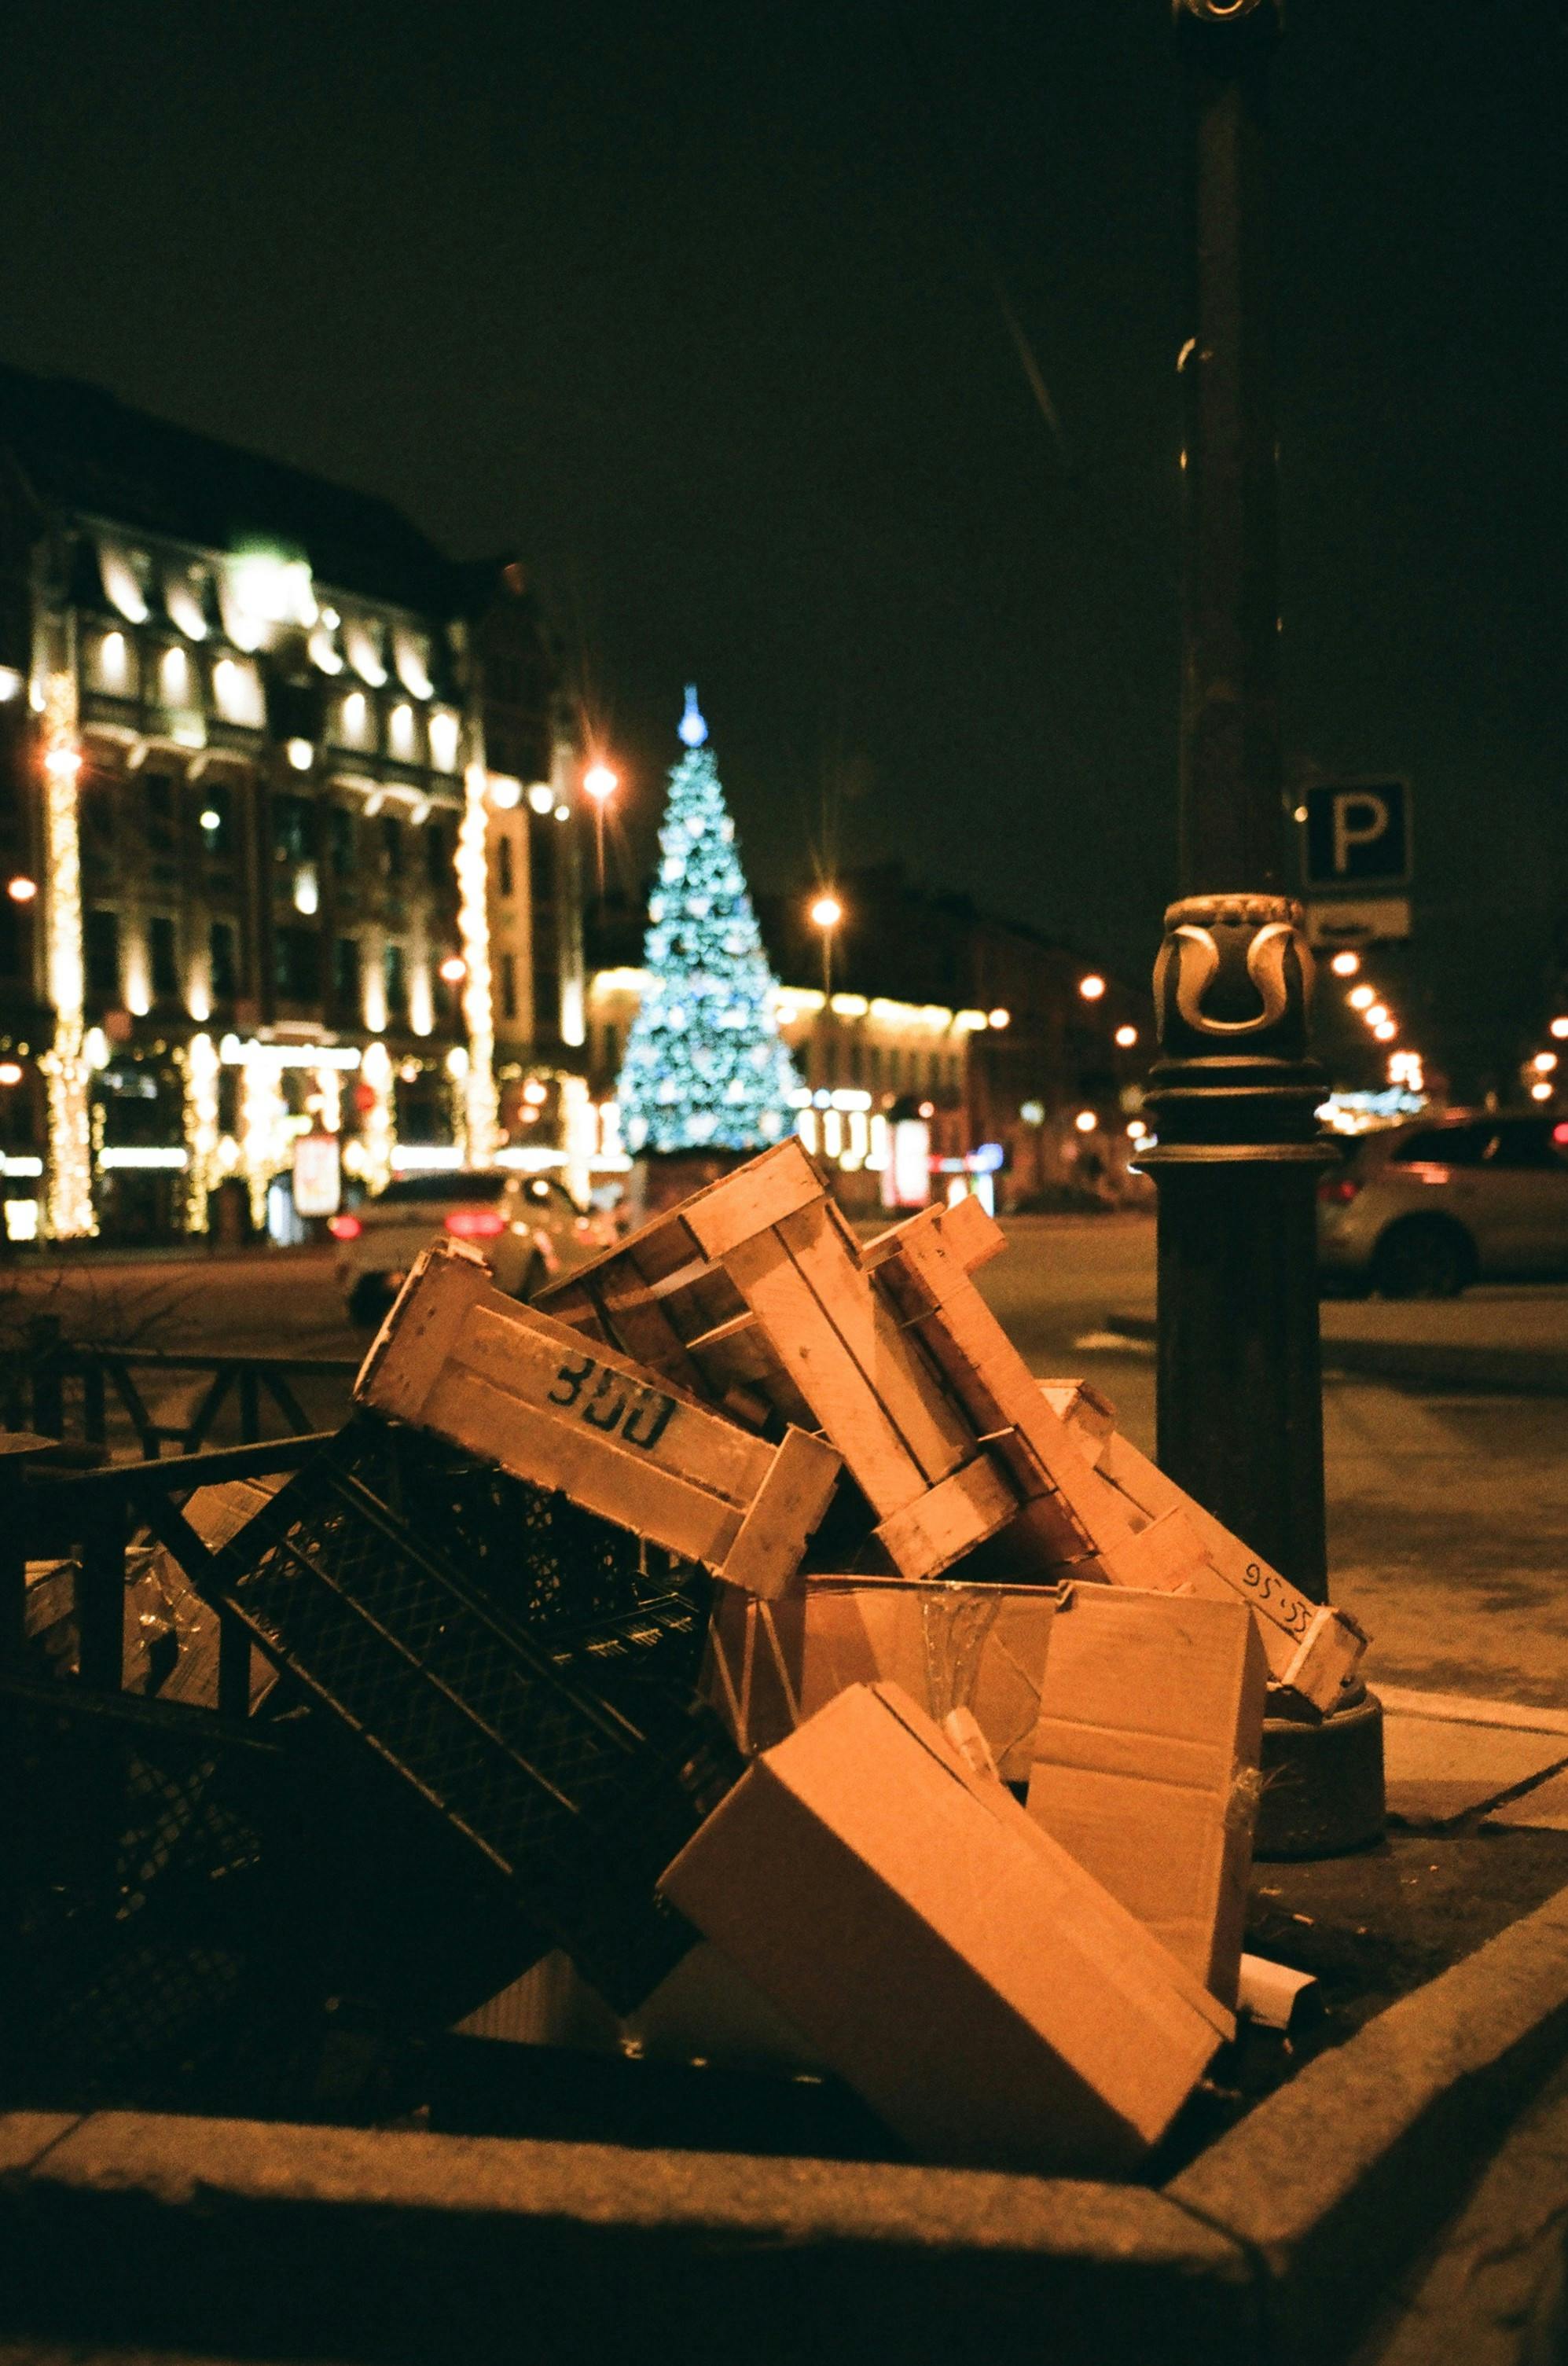 Kisten und Habseligkeiten auf der Straße | Quelle: Pexels